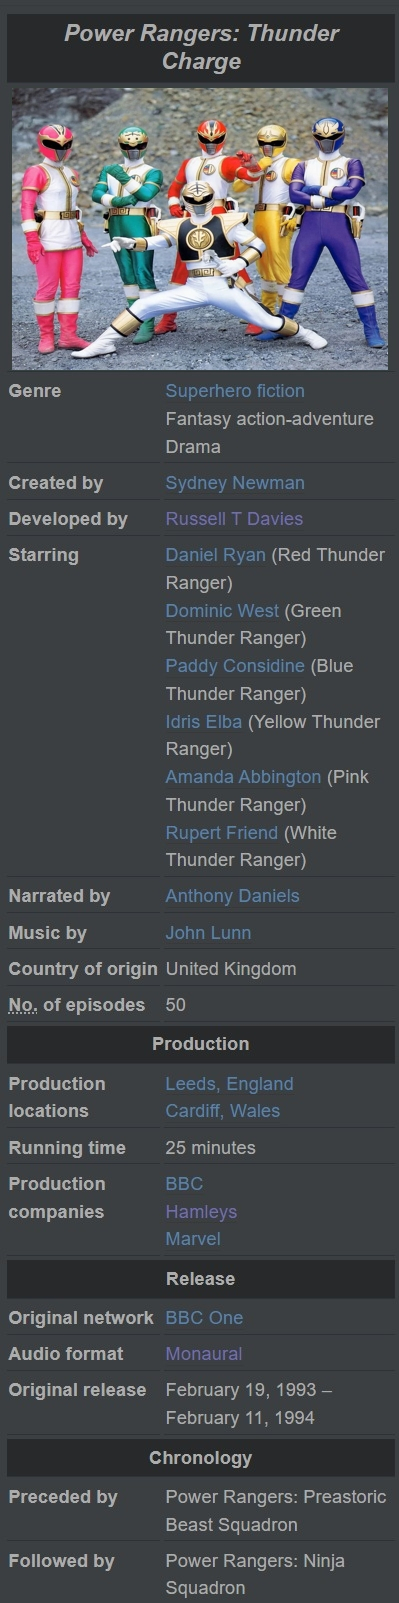 1993-Power Rangers Thunder Charge.jpg